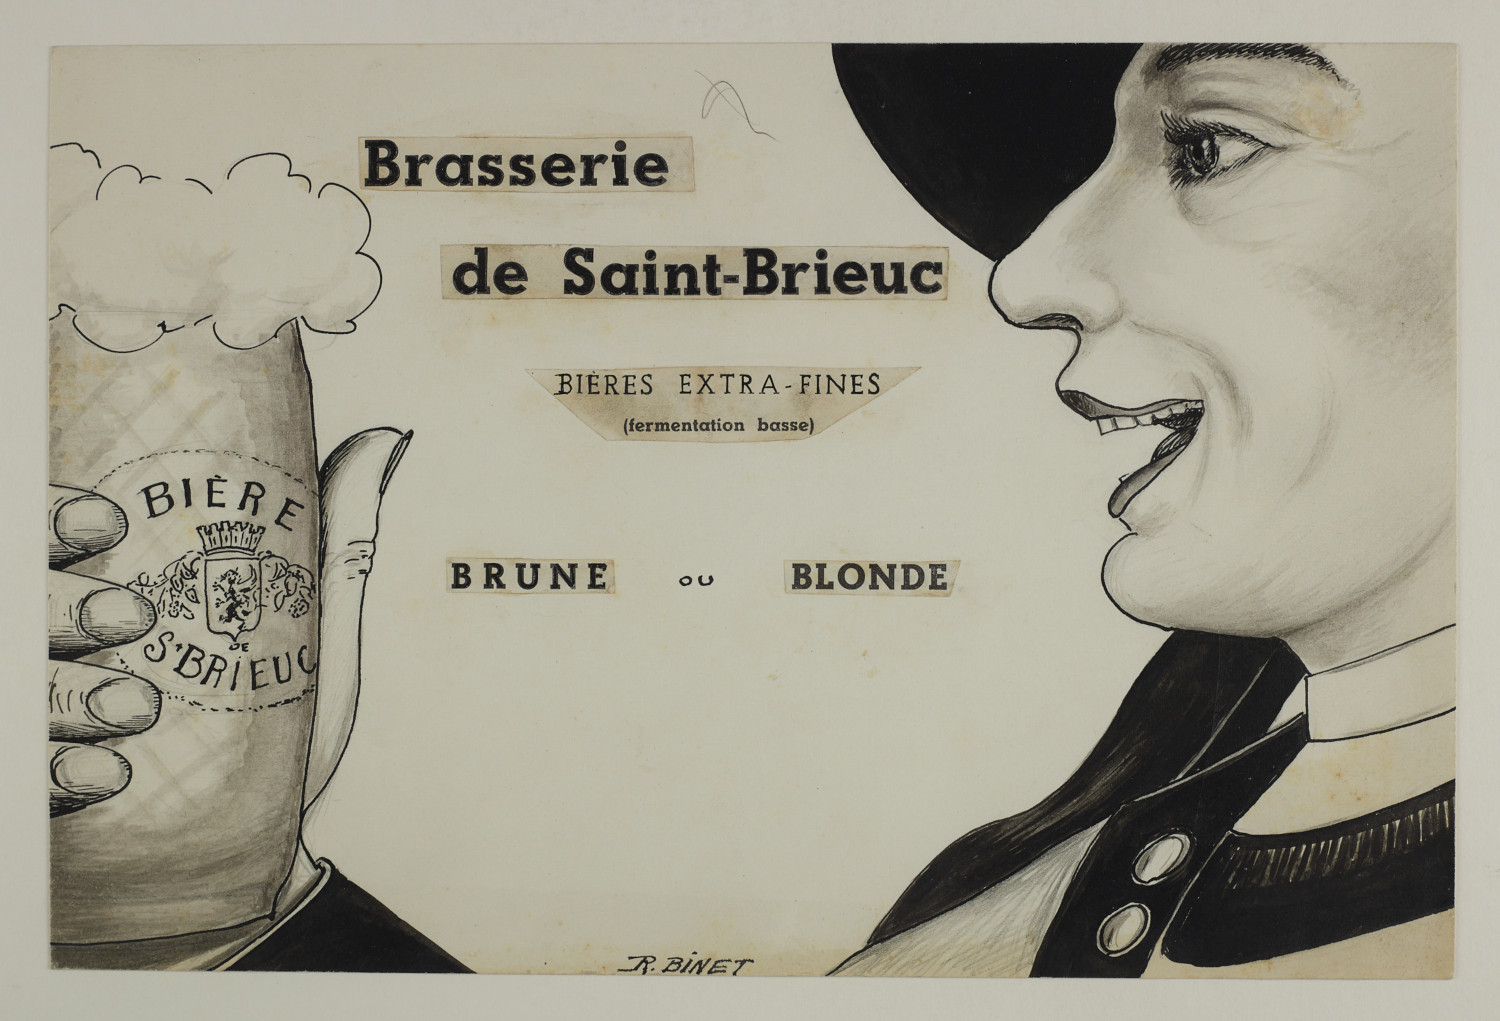 Publicité pour la Brasserie de Saint-Brieuc. Musée de Bretagne : 982.0008.2363.